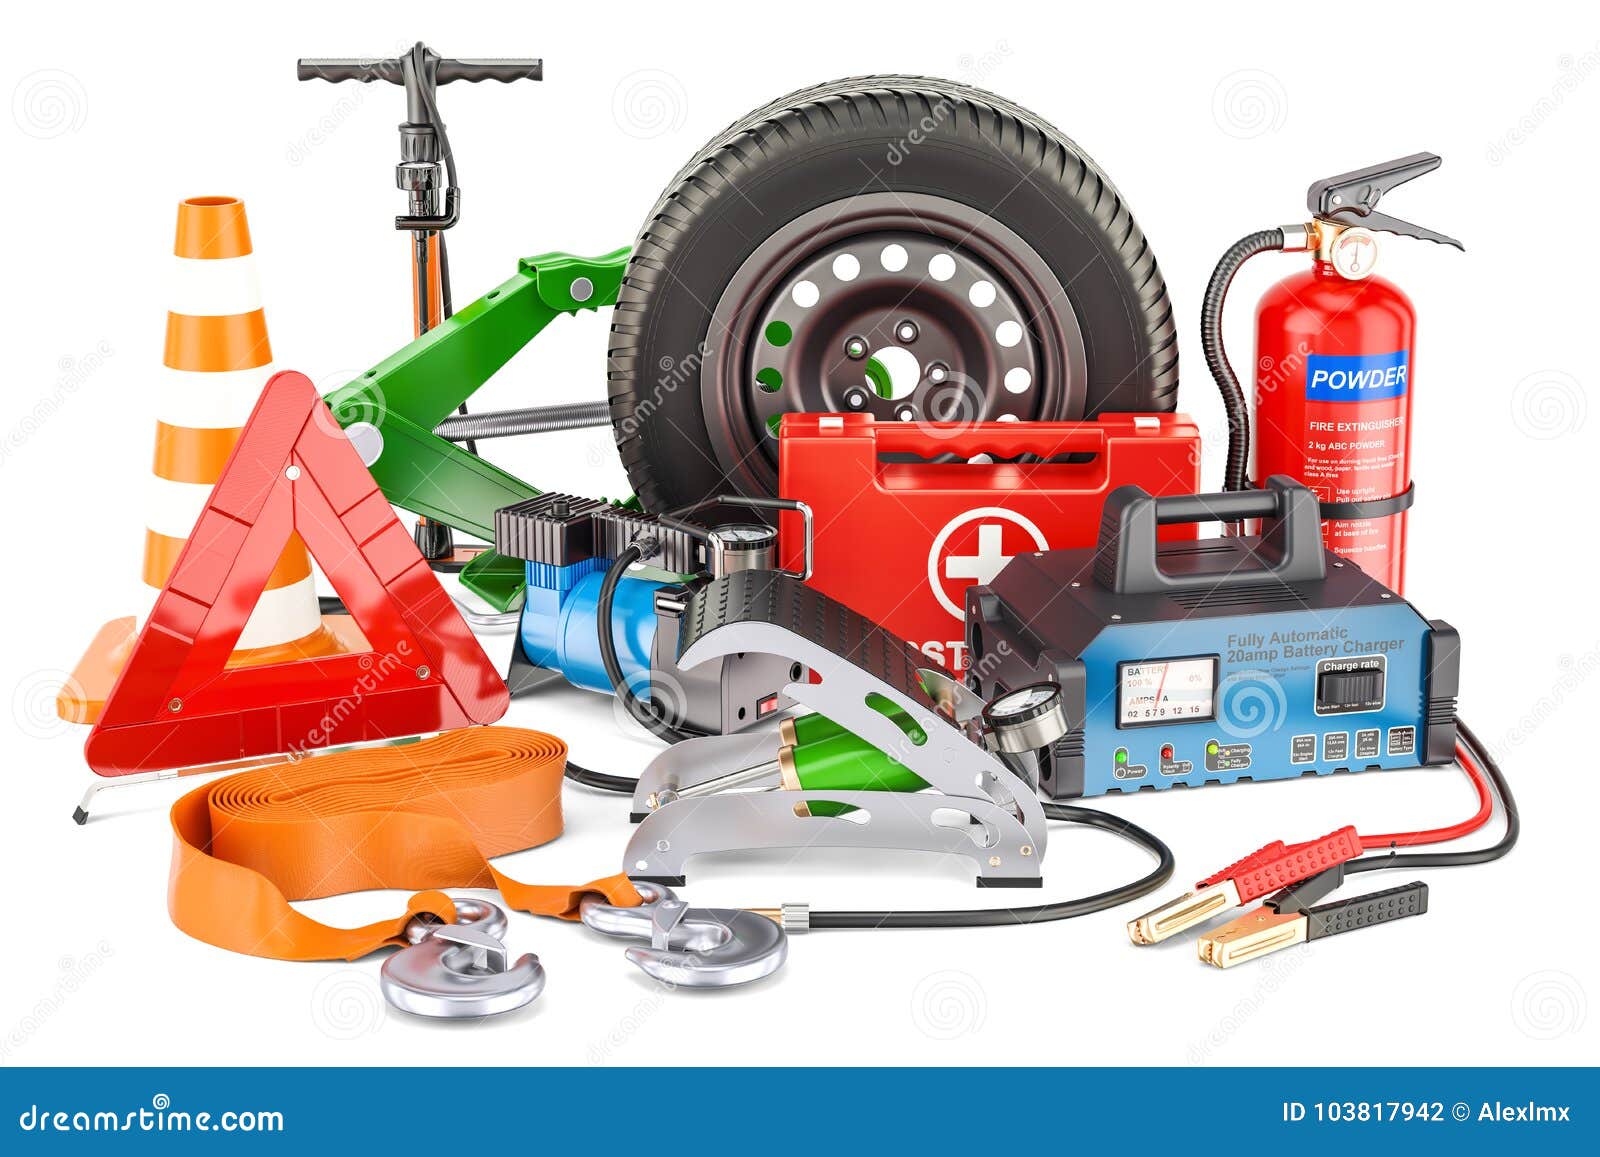 https://thumbs.dreamstime.com/z/automotive-tools-equipment-accessories-d-car-tools-equipment-accessories-d-rendering-103817942.jpg